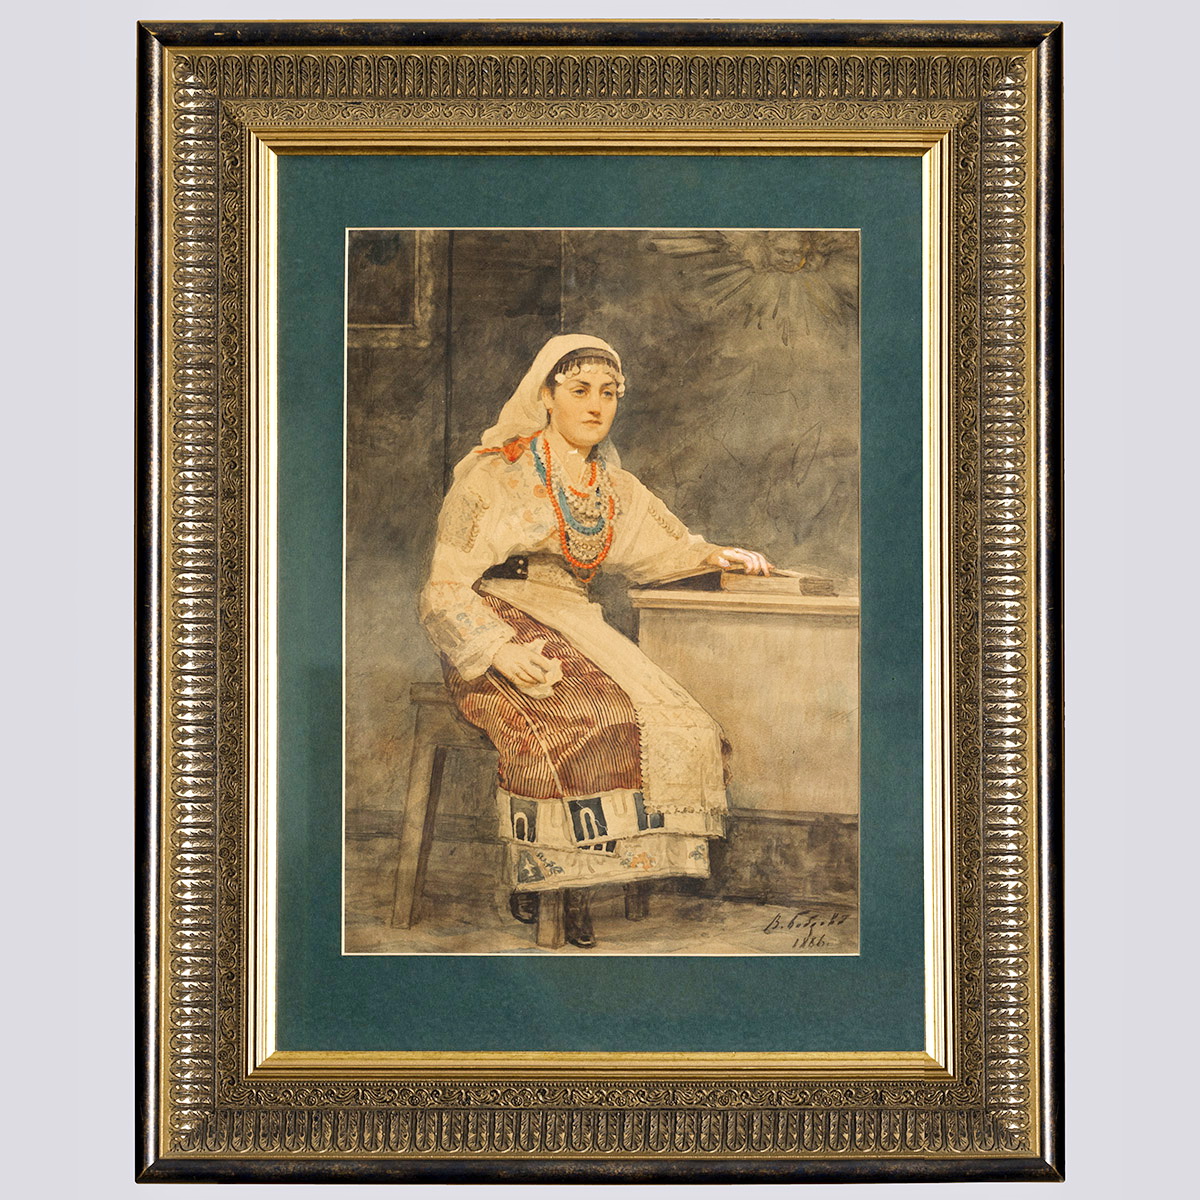 Картина «Женщина в национальном костюме» худ. Бобров В. А., 1886 г., бумага, акварель